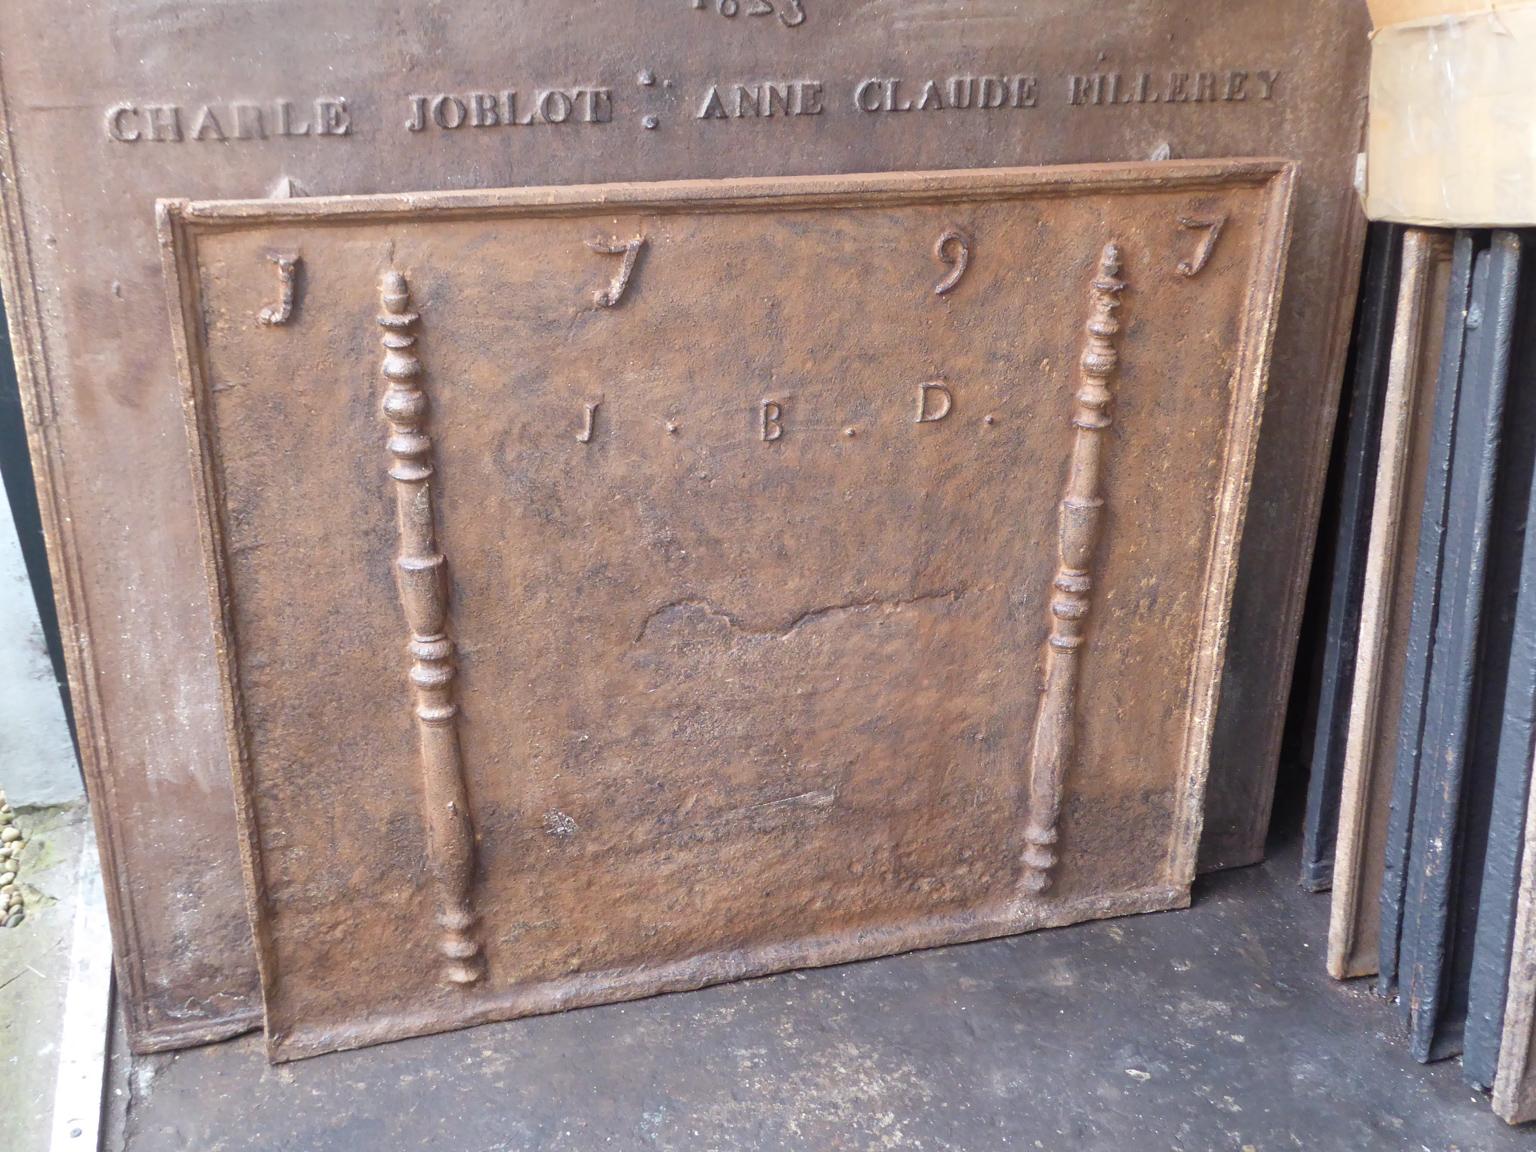 plaque de cheminée Louis XV du XVIIIe siècle. La date de production, 1797, est gravée sur la plaque de cheminée. Les piliers font référence à la massue d'Hercule et symbolisent la force et l'inconnu.

La plaque de cheminée est en fonte et a une